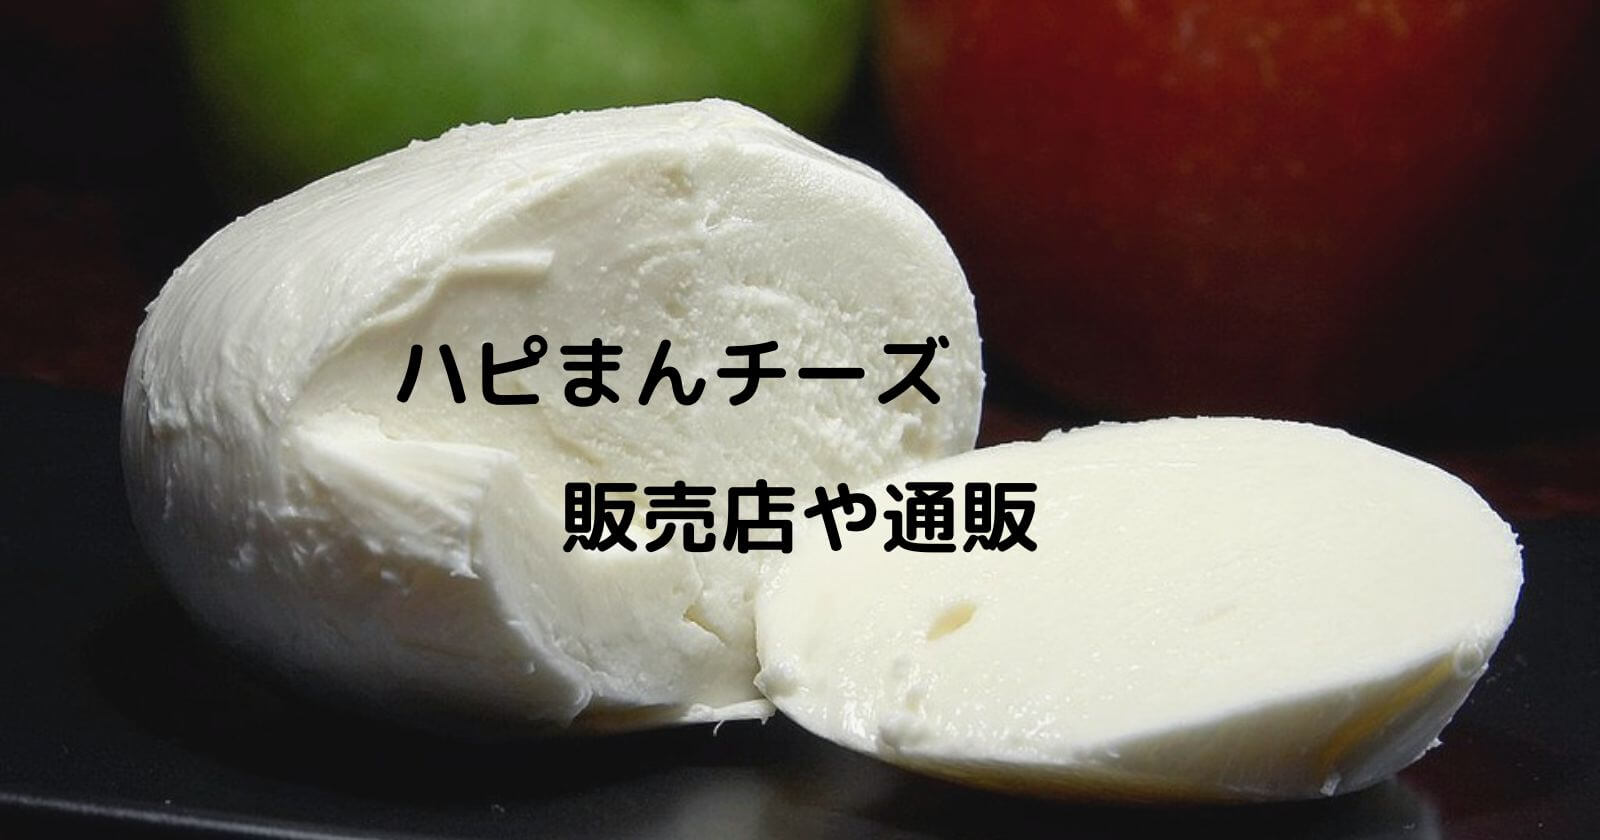 ハピまんチーズの販売店や通販お取り寄せはどこ 東京でも買える